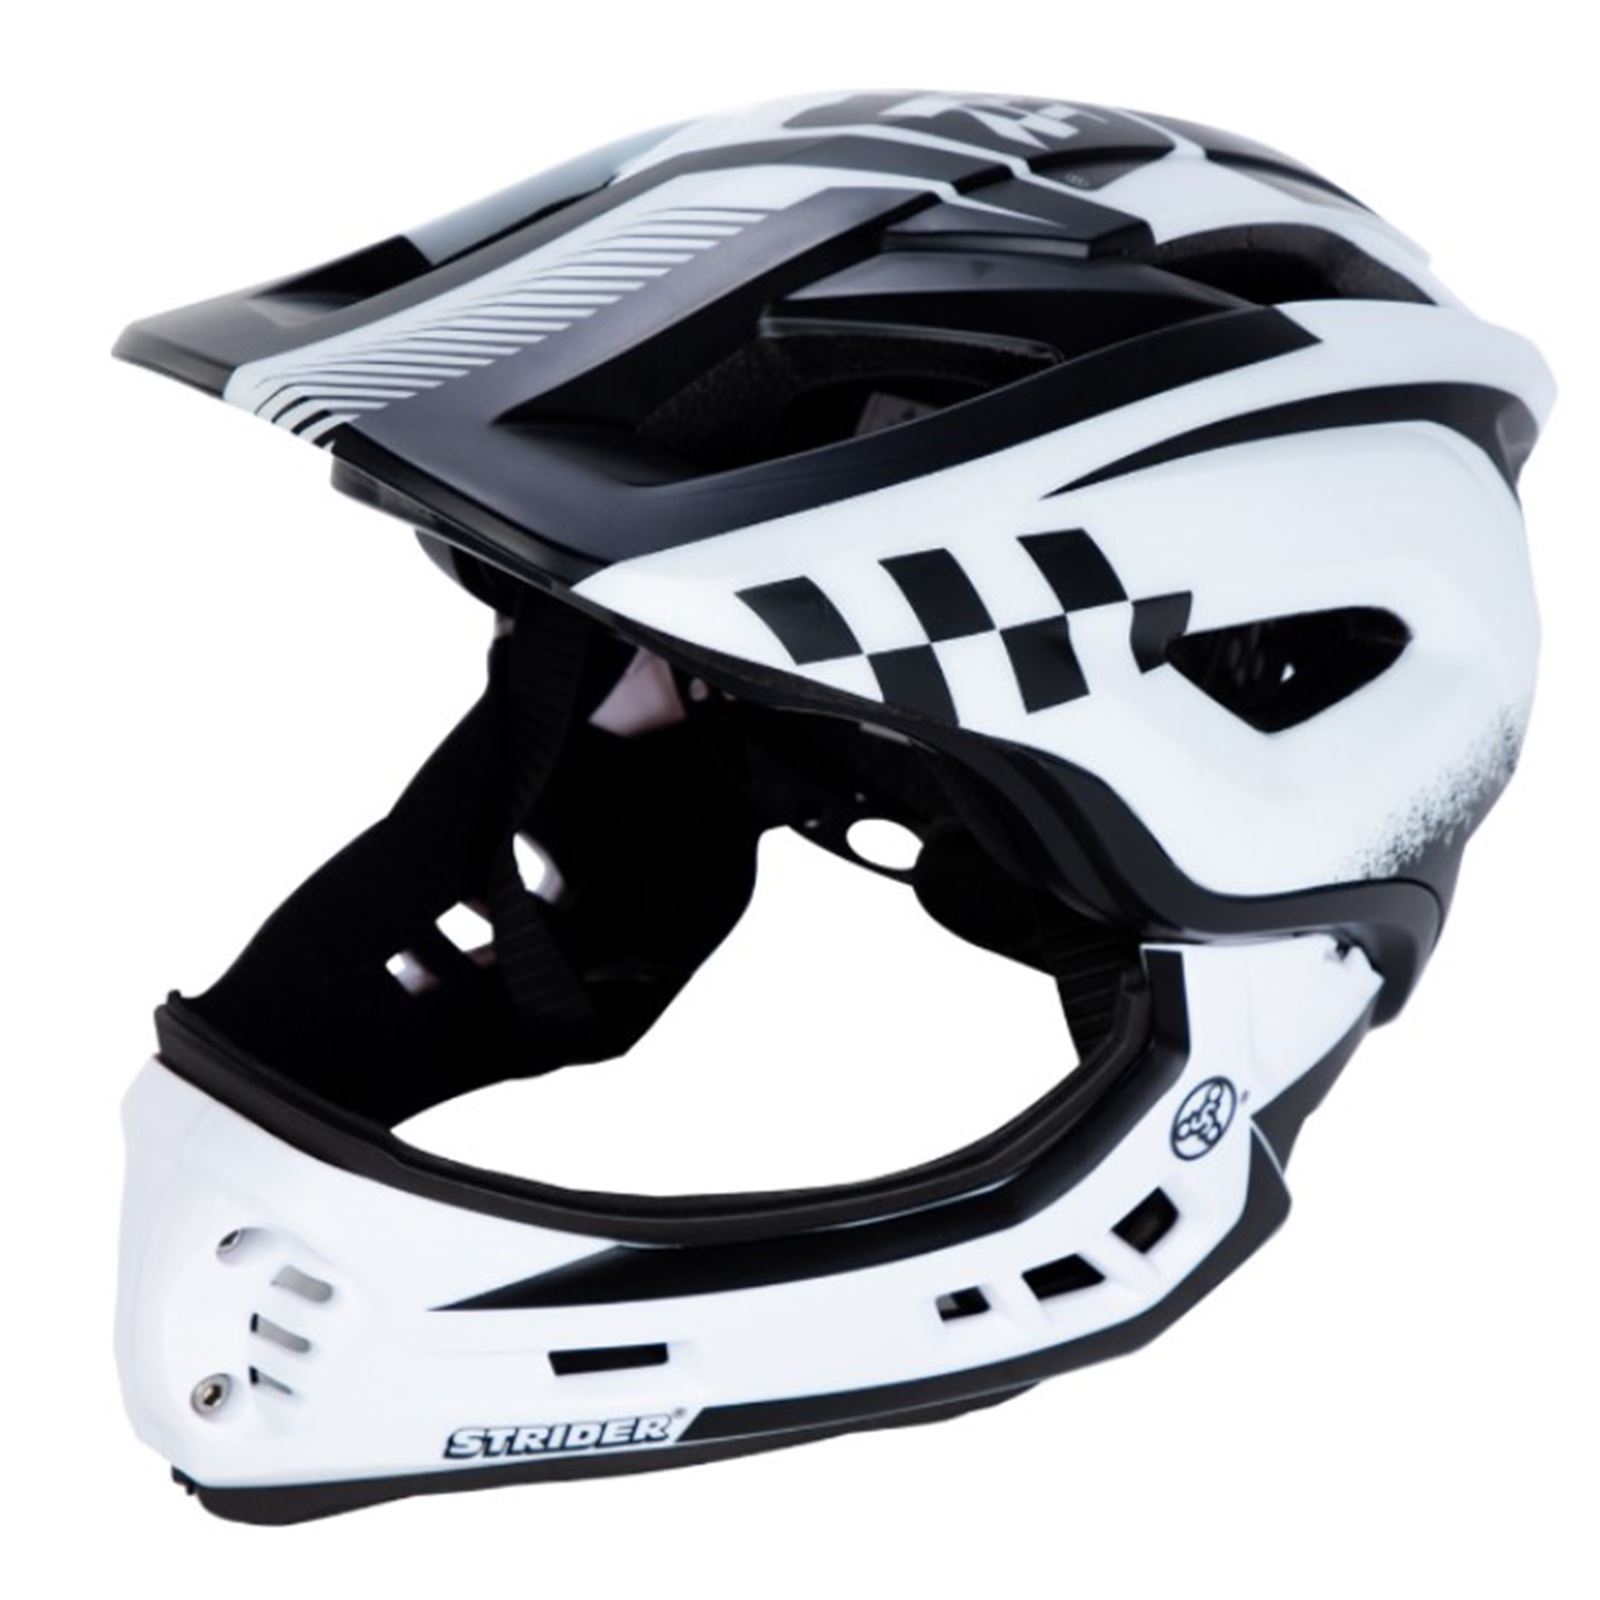 Strider Full Face Youth BMX Bike Helmet - White